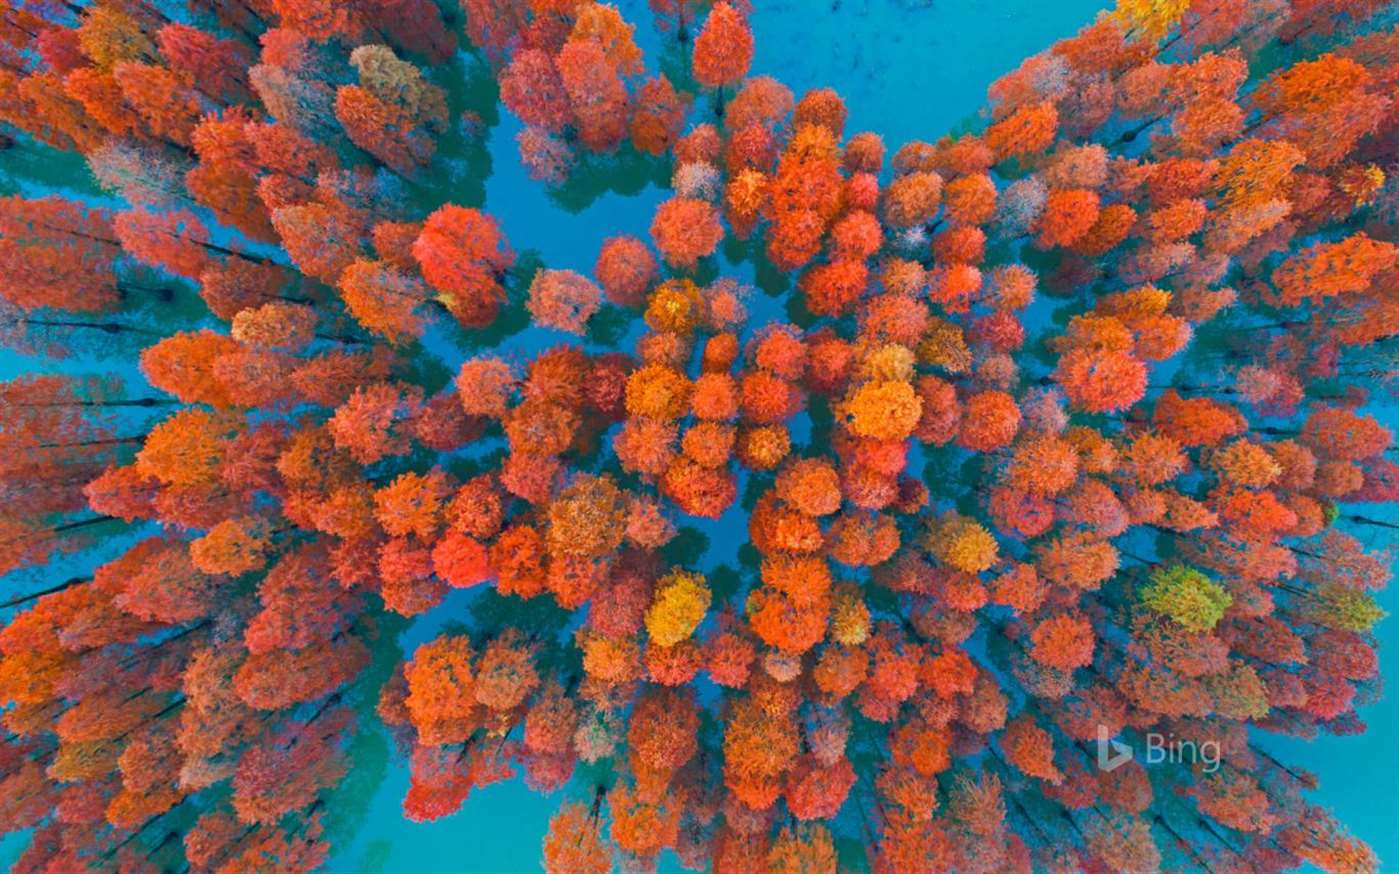 fond d'écran bing,orange,bleu,corail,récif de corail,récif